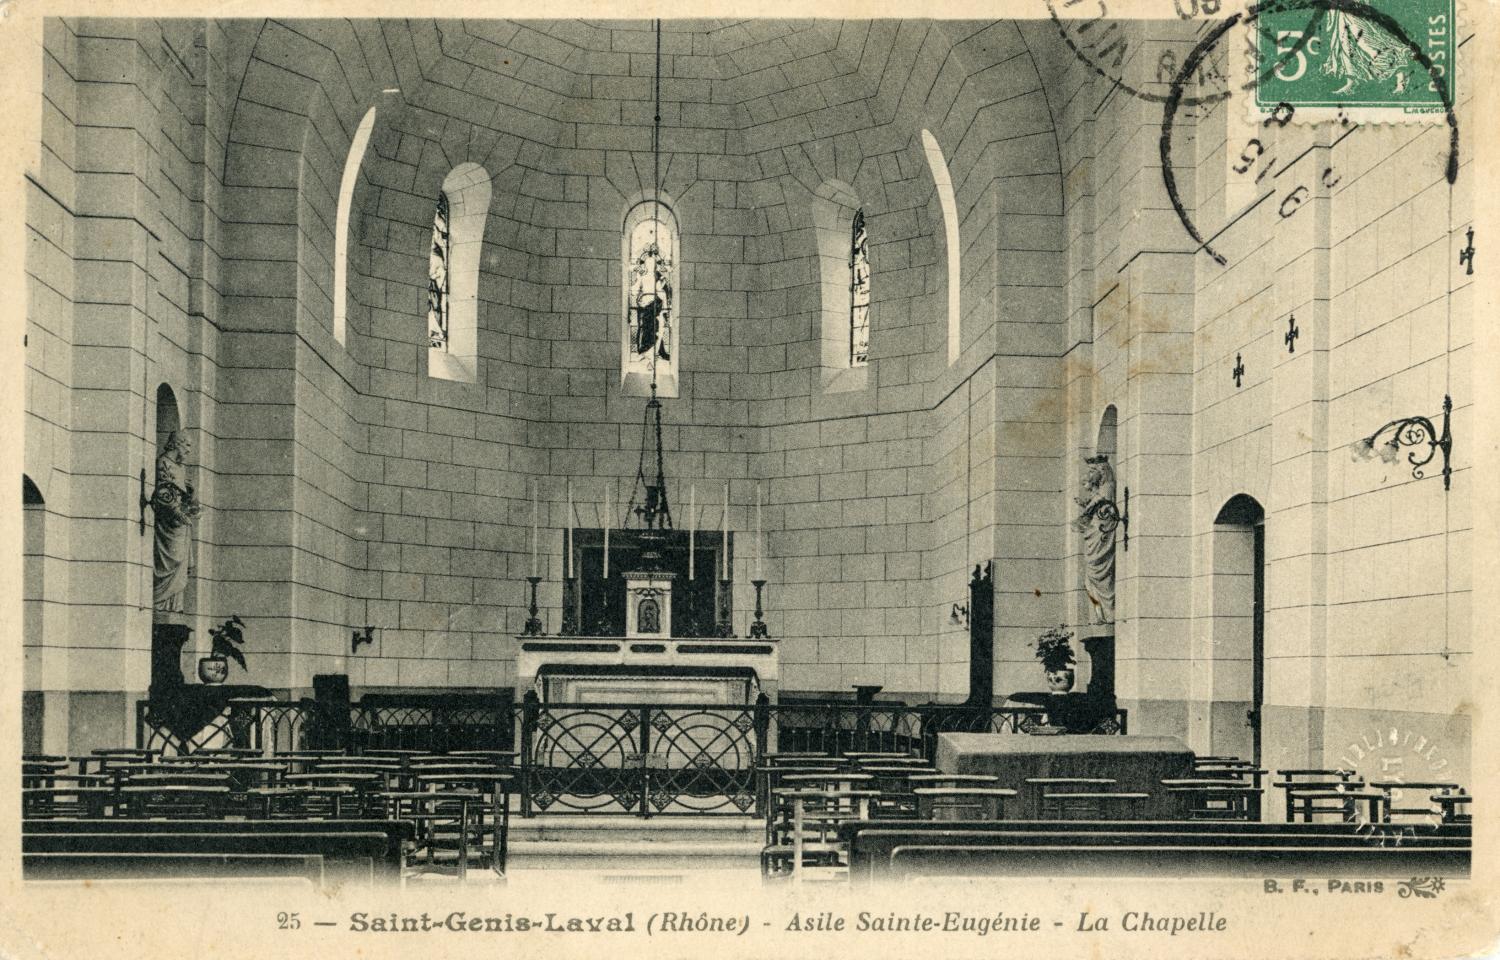 Saint-Genis-Laval (Rhône). - Asile Sainte-Eugénie. - La Chapelle